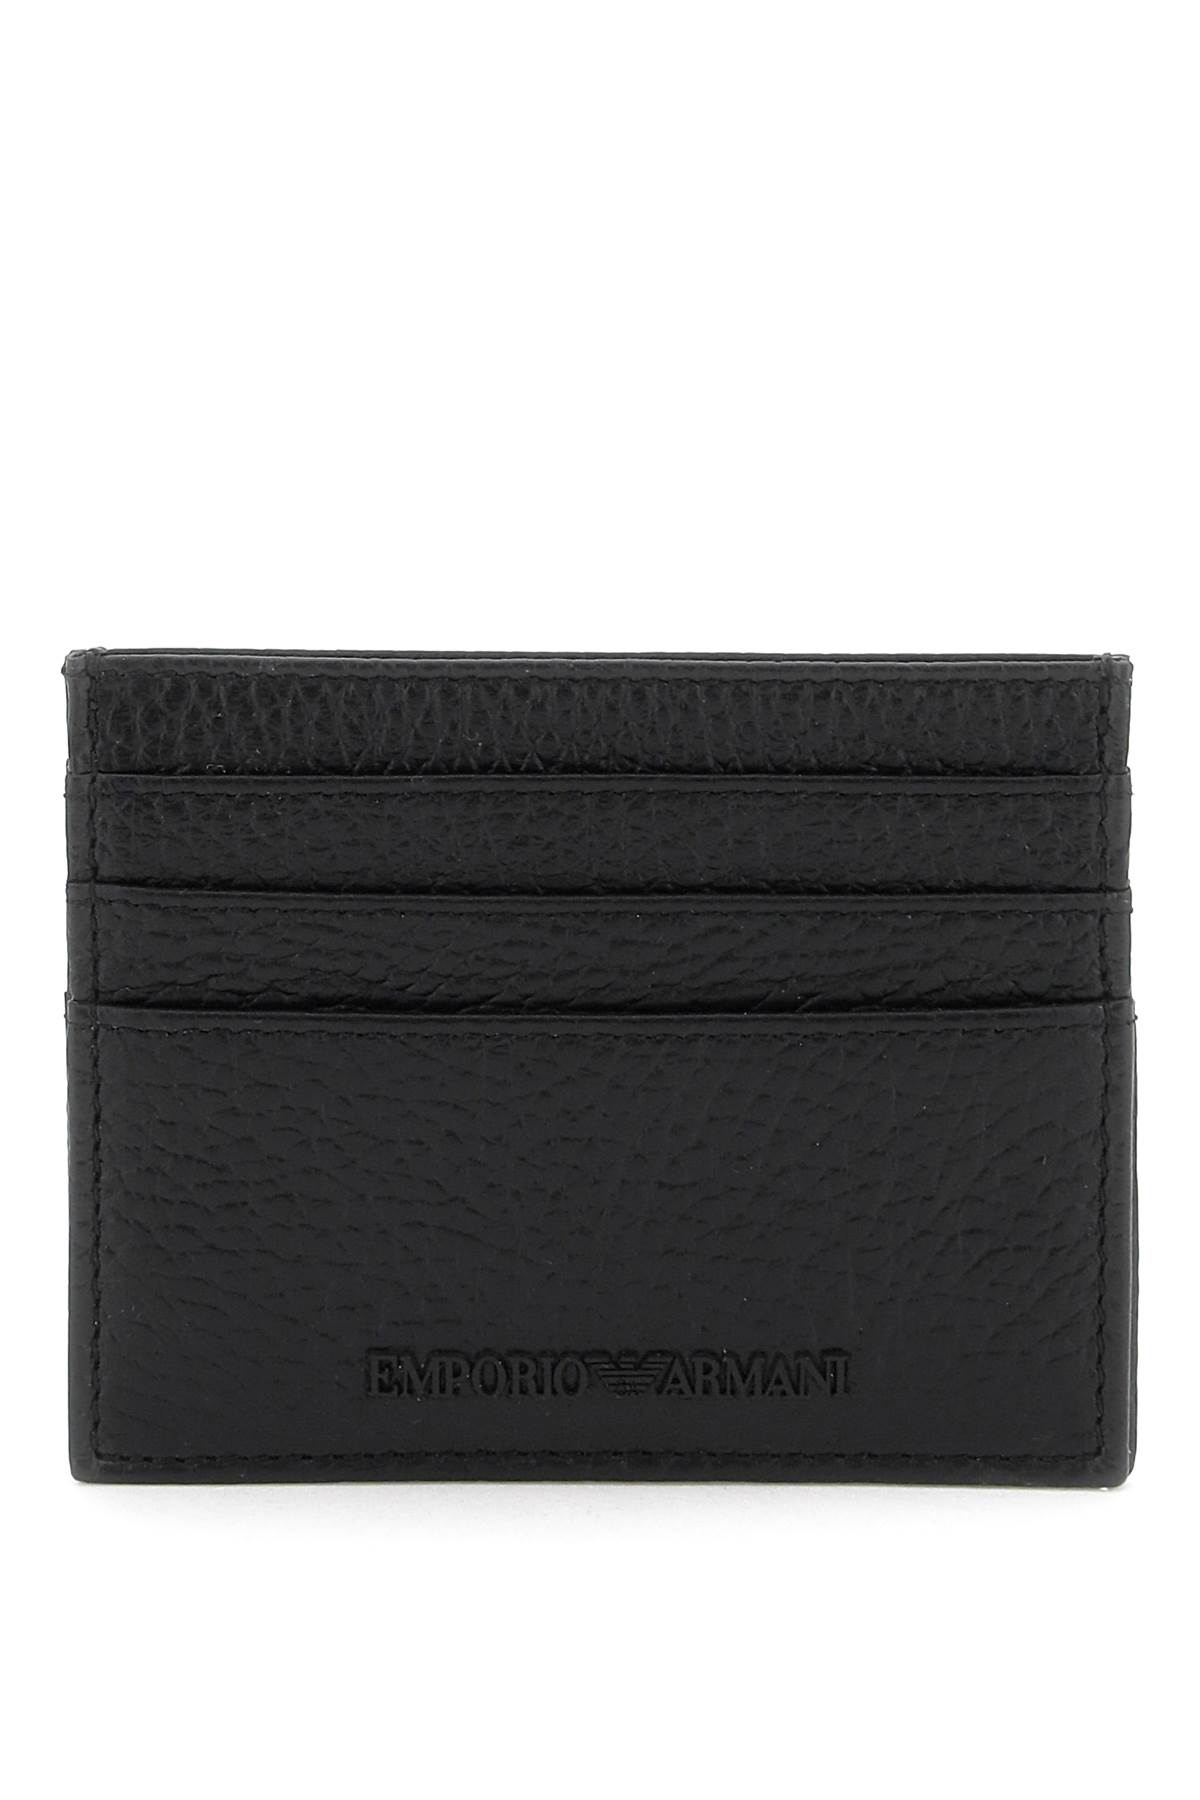 Emporio Armani Grained Leather Cardholder In Black